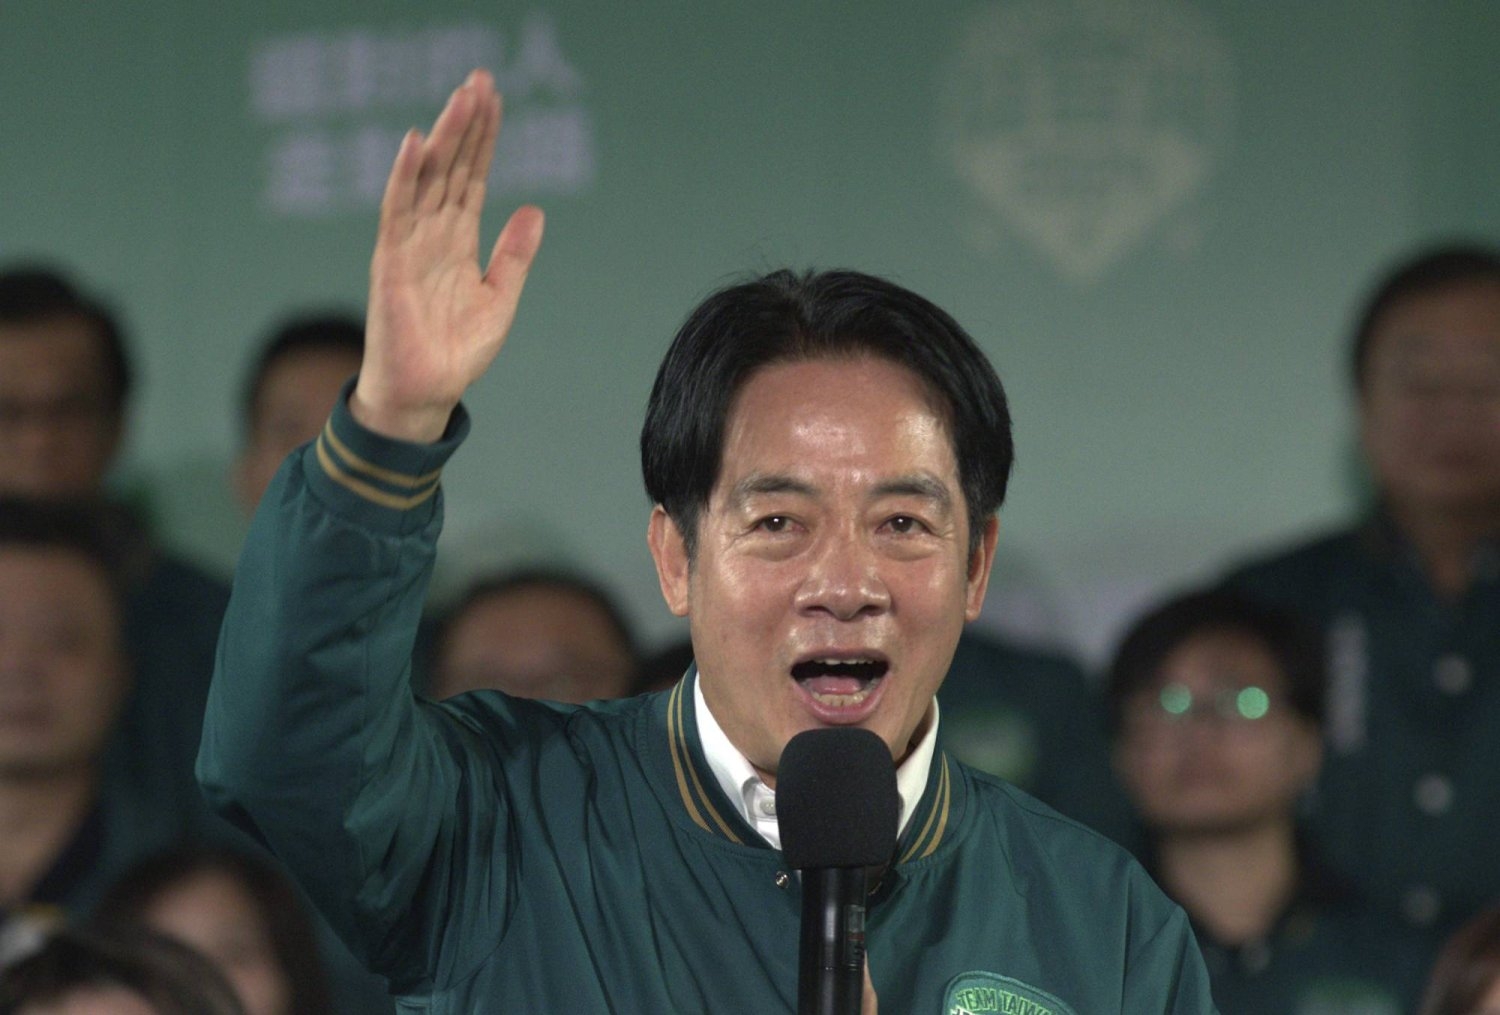 رئيس تايوان المنتخب يثمن دعم واشنطن «القوي» لديمقراطية بلاده